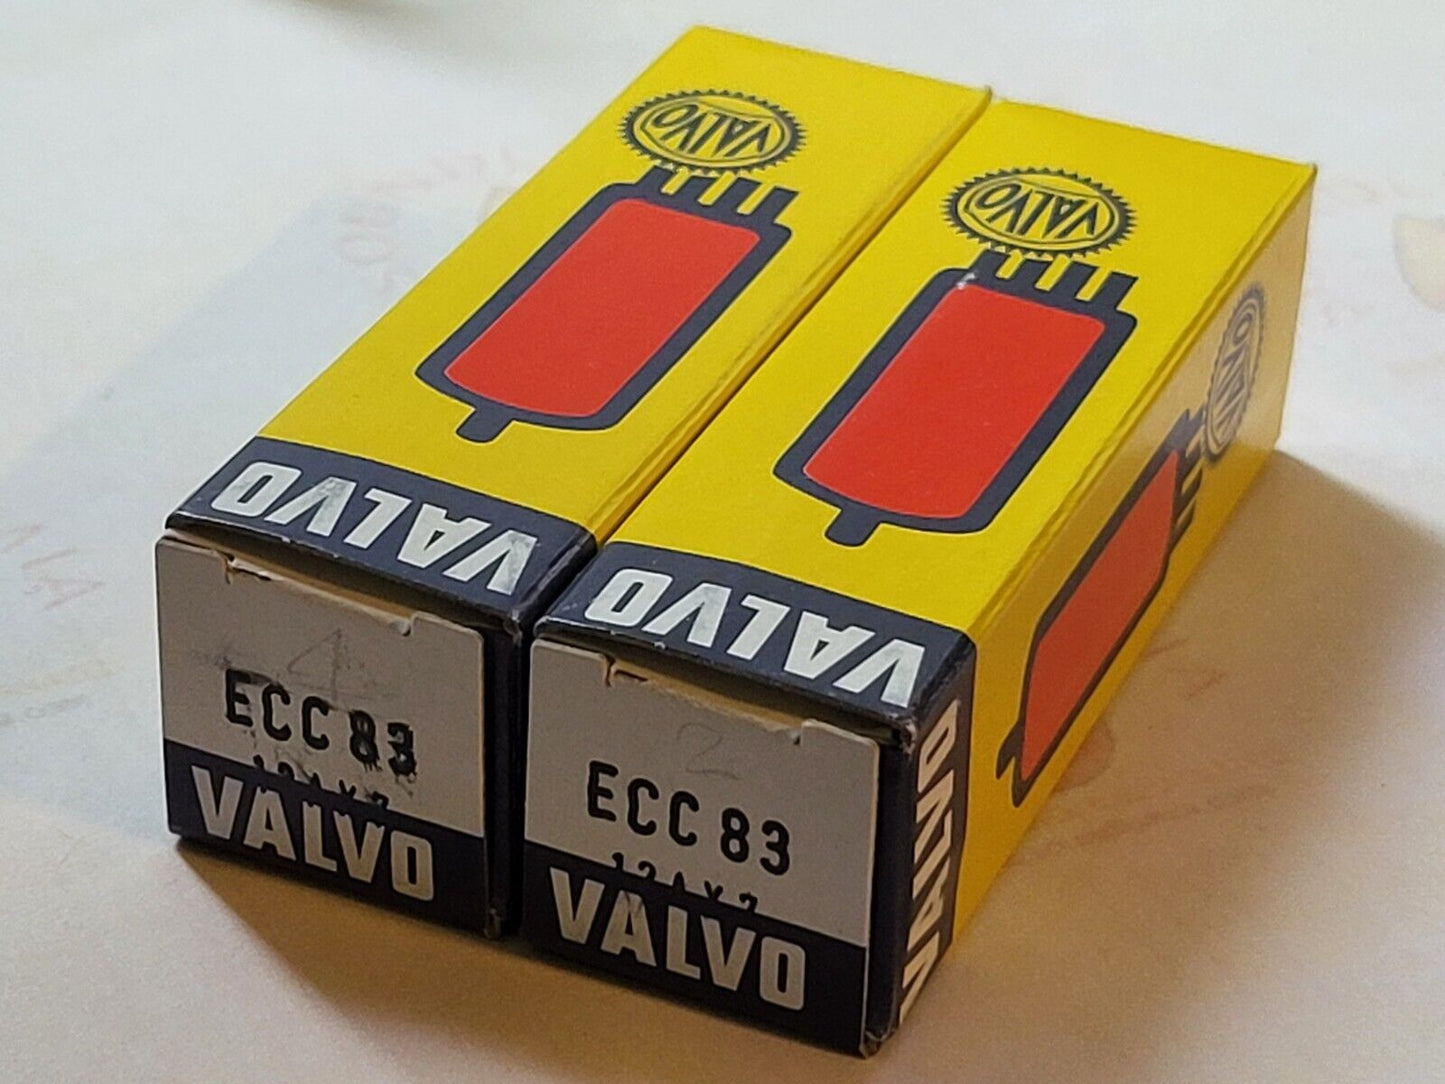 2x Valvo 12AX7 ECC83 w/ 30° Getter in Orig. Boxes - Hamburg 1959 I60 - Same code